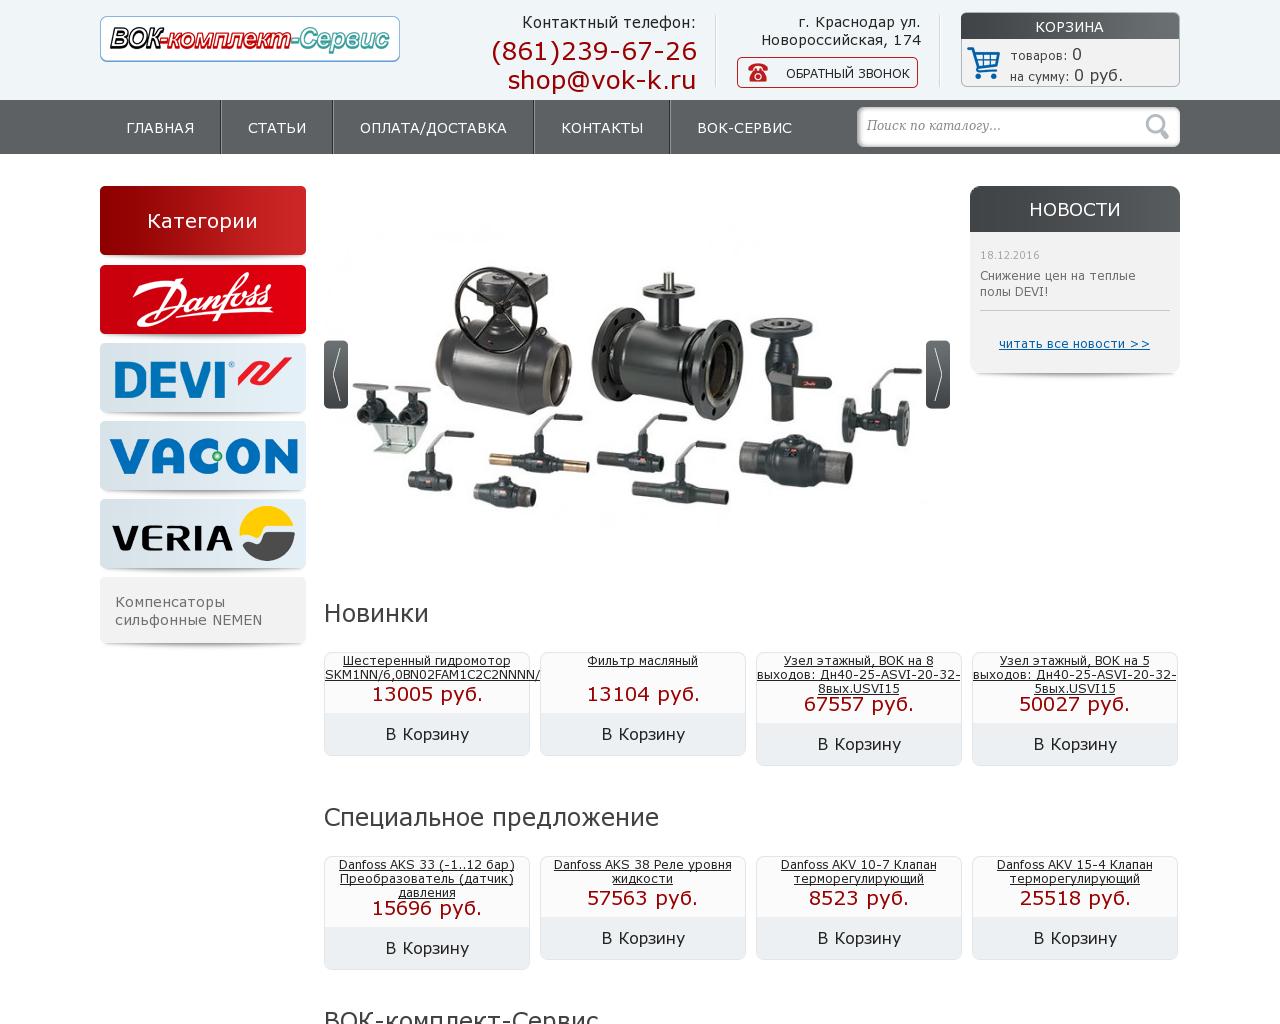 Изображение сайта vok-k.ru в разрешении 1280x1024